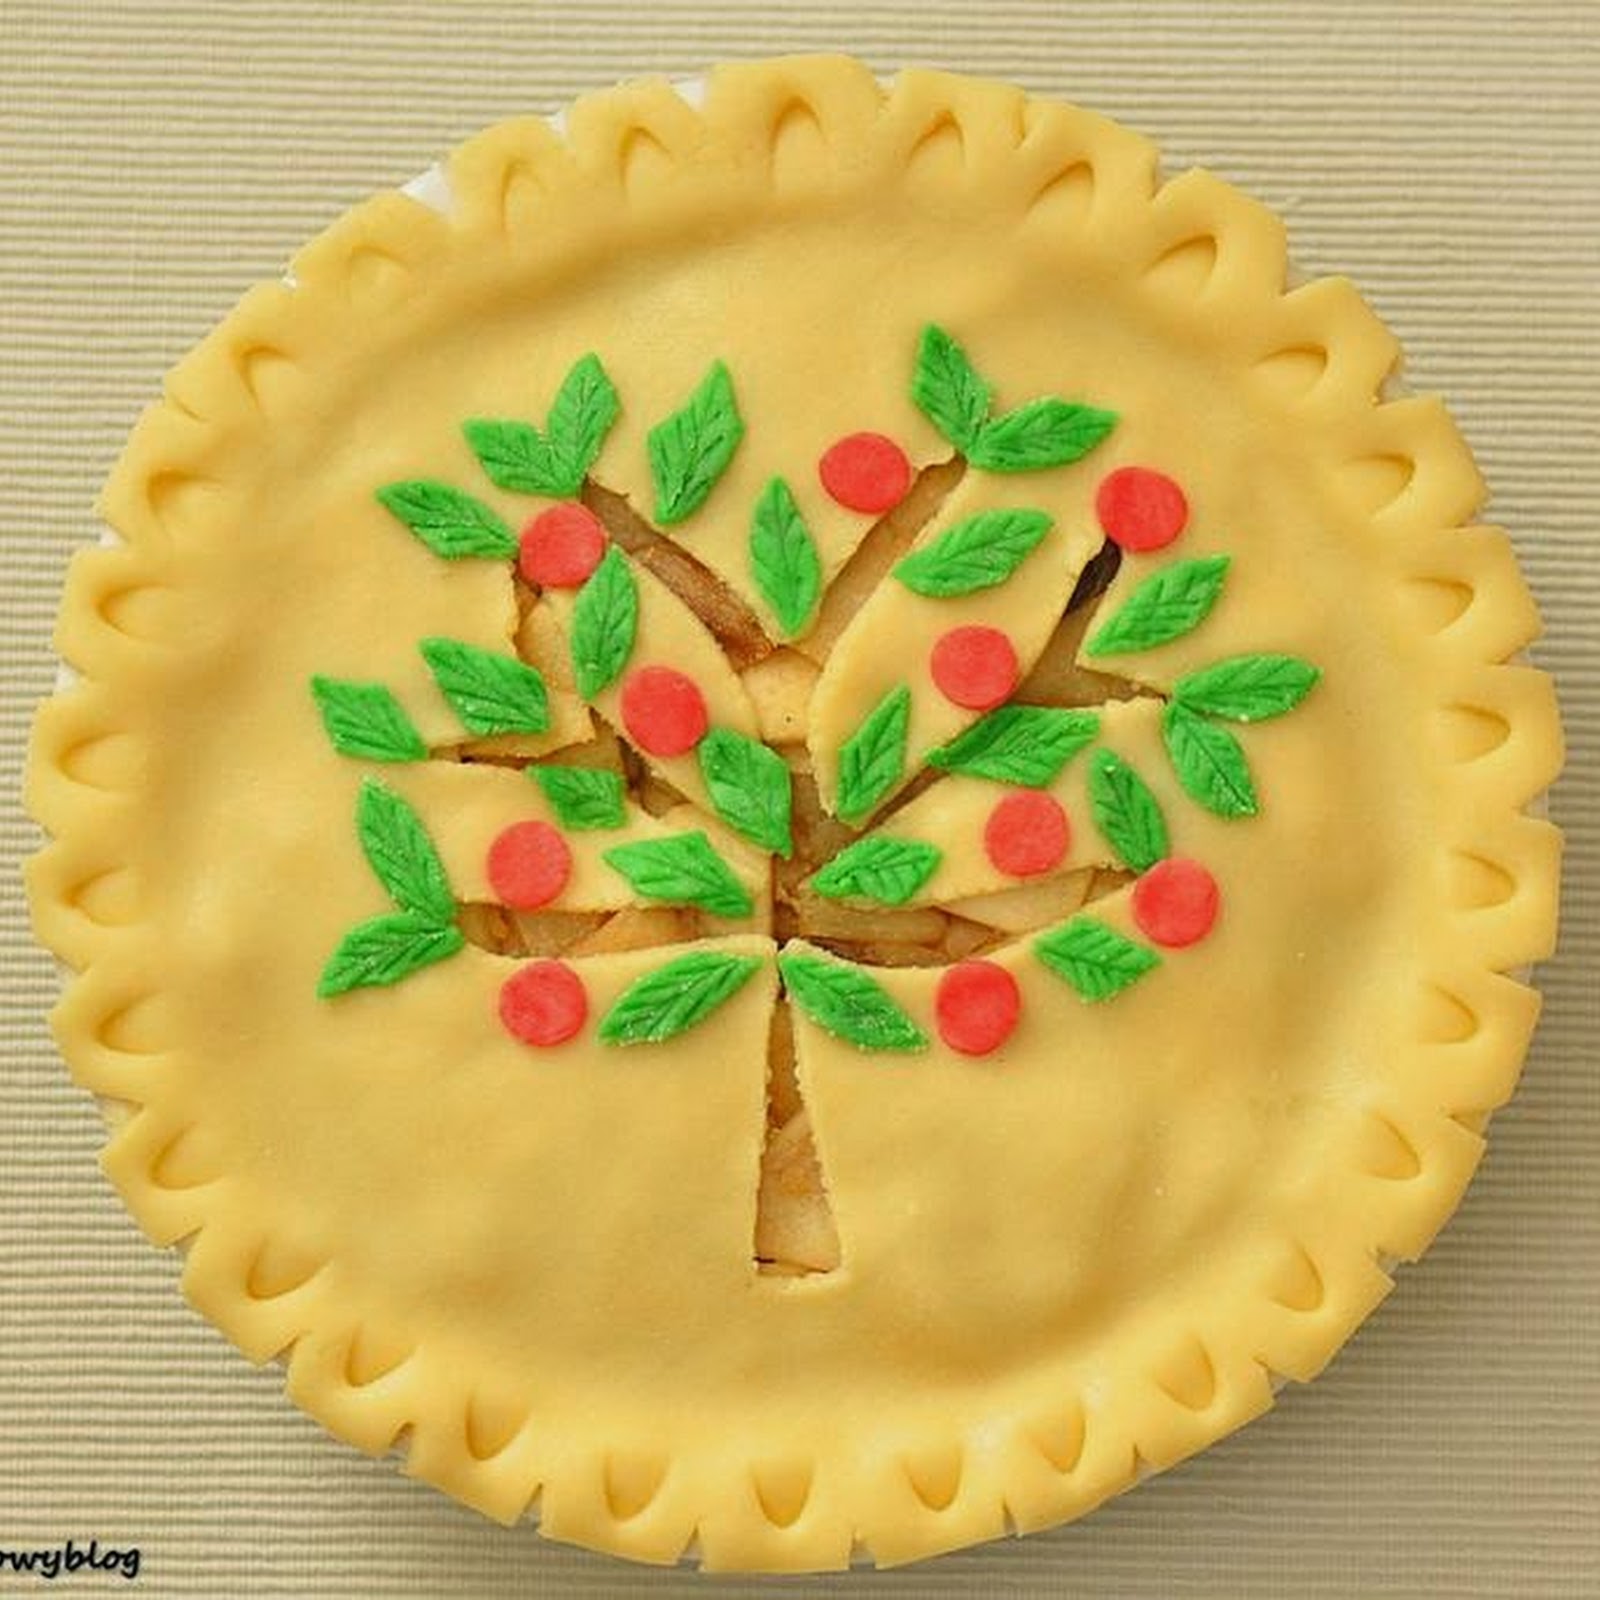 Apple pie - amerykańska szarlotka i Święto Dziękczynienia